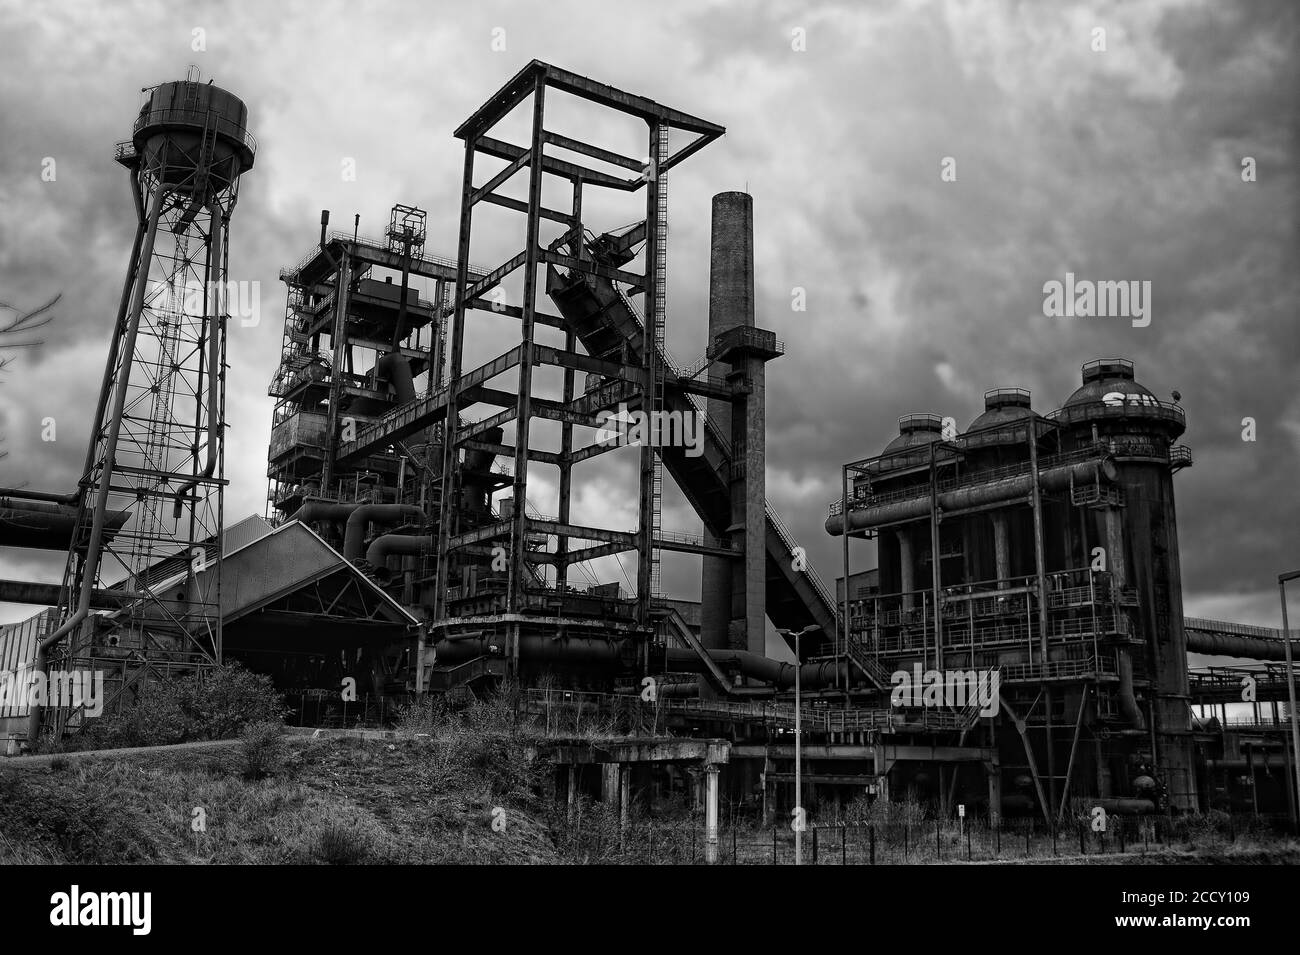 Ancienne usine de haut fourneau, aciéries, zone industrielle, Phoenix-West, Hoerde, Dortmund, région de la Ruhr, Rhénanie-du-Nord-Westphalie, Allemagne Banque D'Images